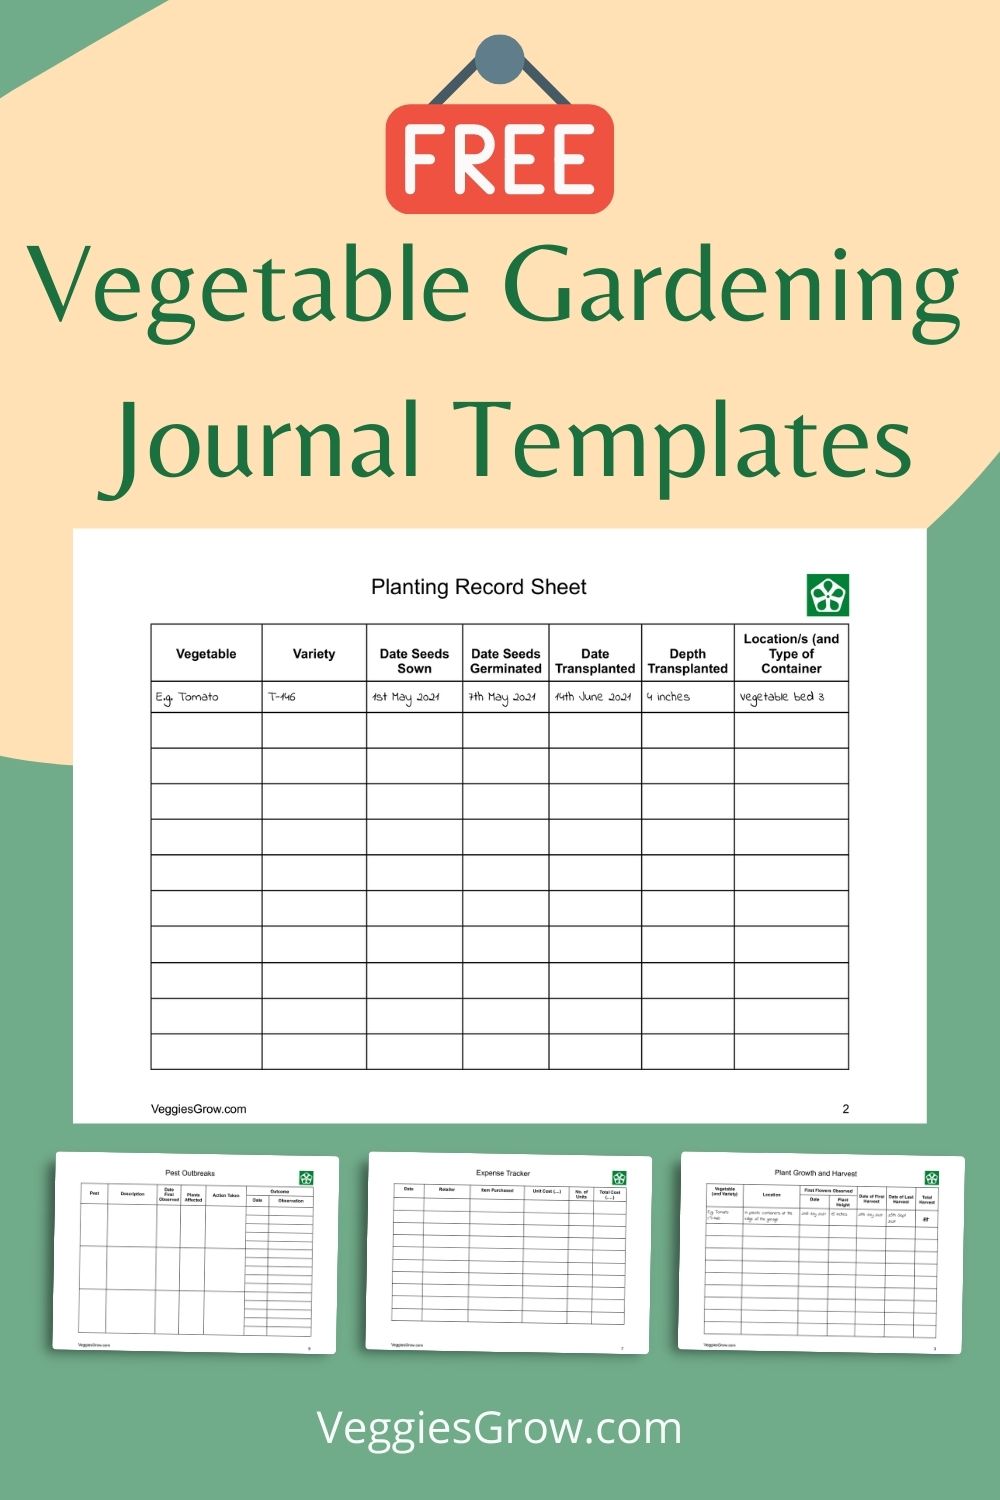 download-your-free-vegetable-garden-journal-templates-veggies-grow